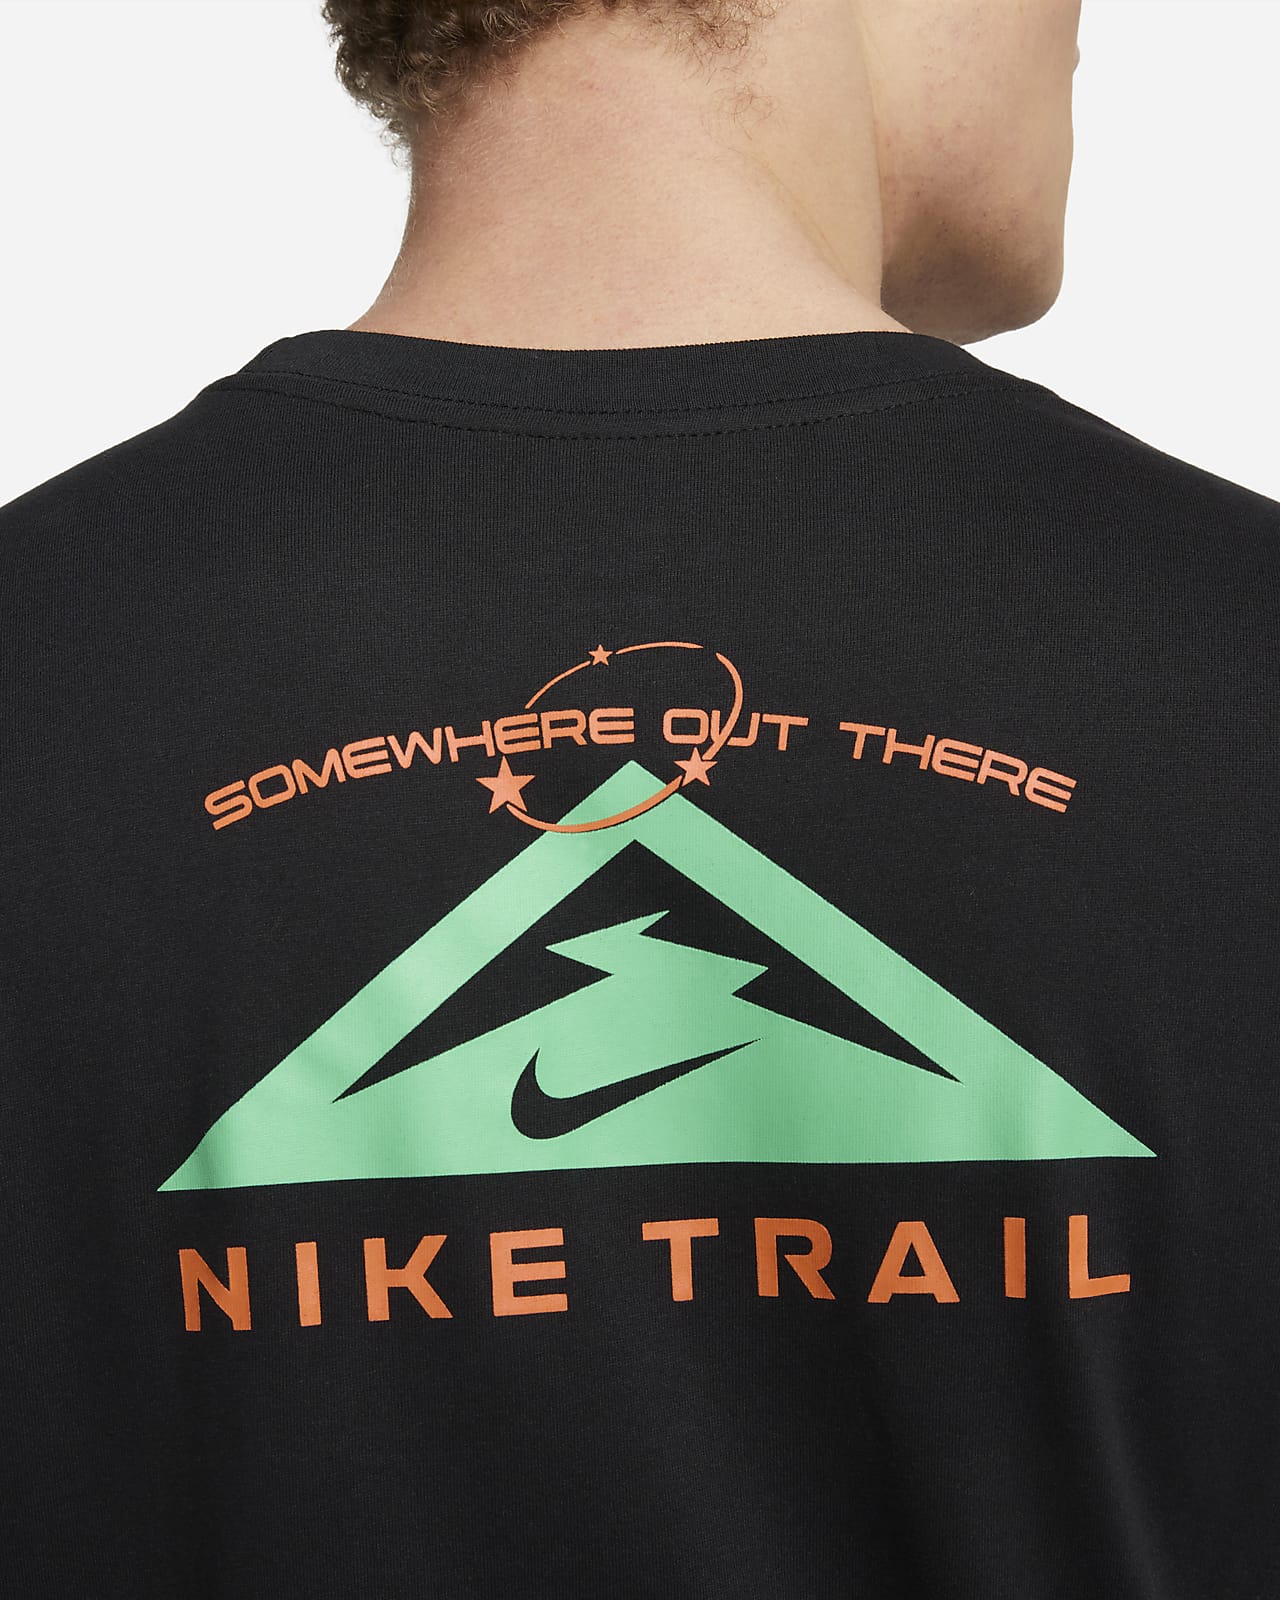 Nike Trail til DK